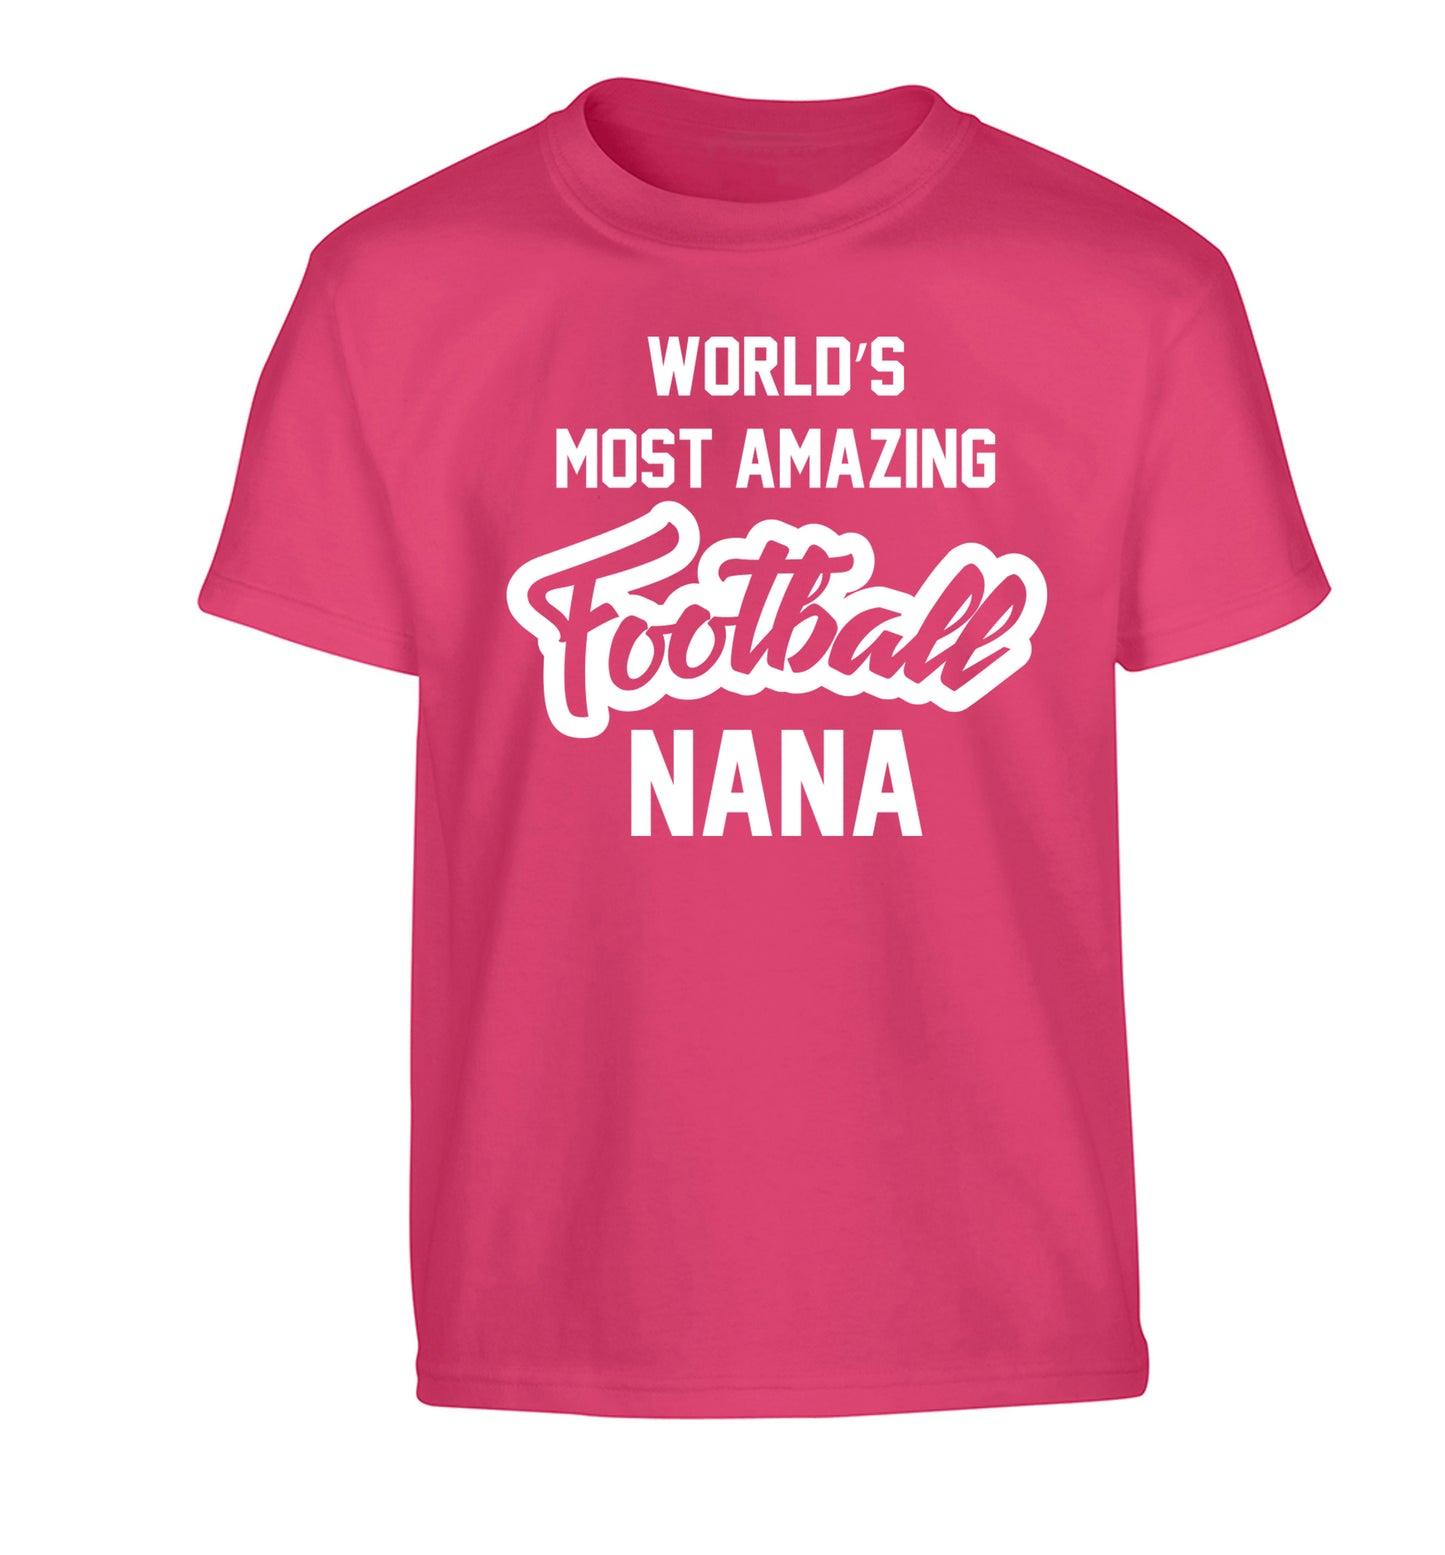 Worlds most amazing football nana Children's pink Tshirt 12-14 Years